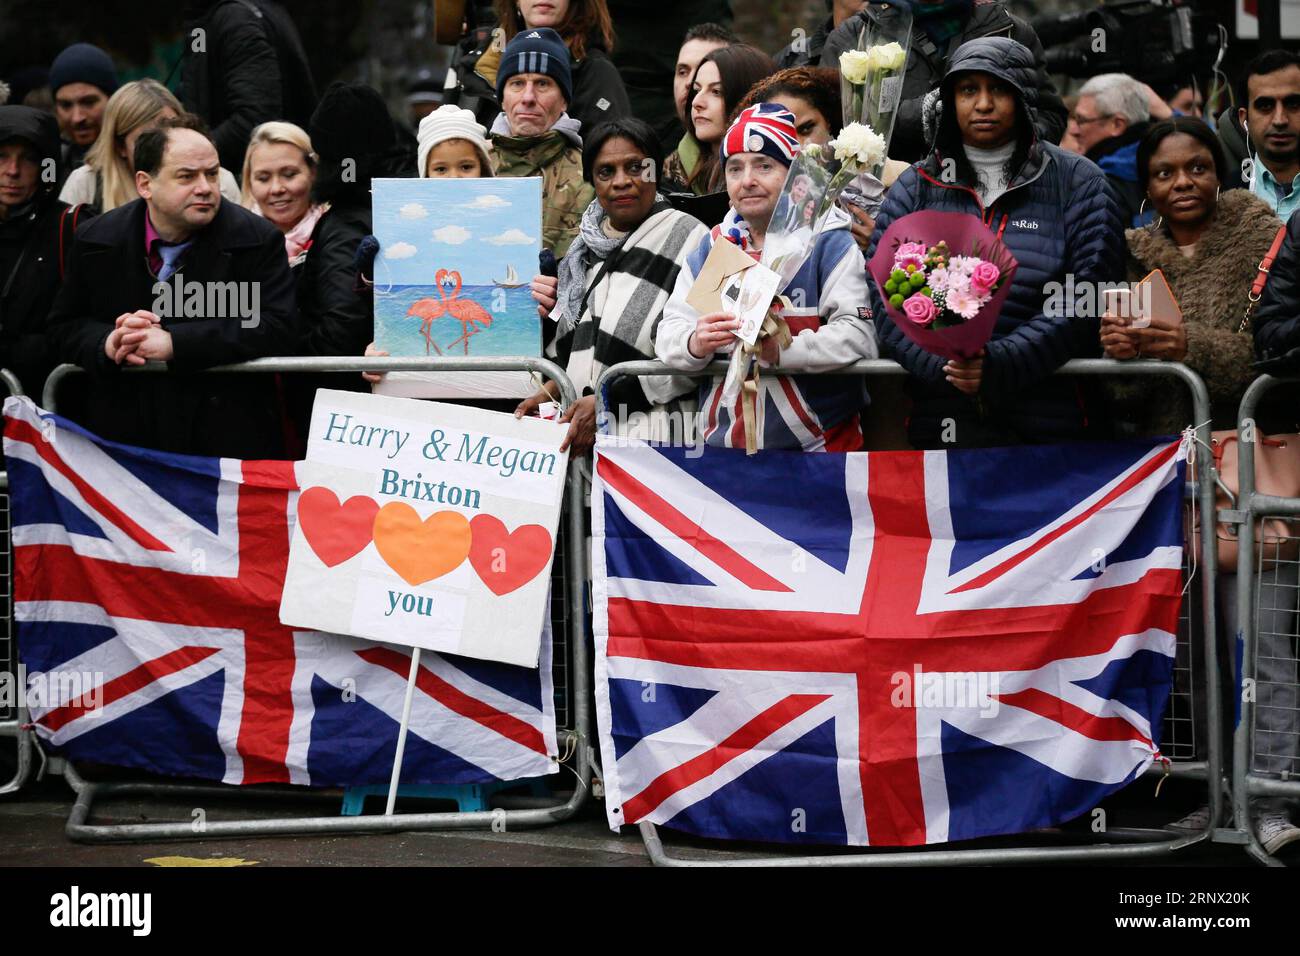 (180109) -- LONDRA, 9 gennaio 2018 -- la gente aspetta il principe Harry e Meghan Markle al Pop Brixton a Londra, in Gran Bretagna, il 9 gennaio 2018. Il principe Harry e Meghan Markle si sposeranno in una cerimonia al castello di Windsor il 19 maggio. ) BRITAIN-LONDON-PRINCE HARRY-MEGHAN MARKLE-REPREZENT RADIO-VISIT TIMXIRELAND PUBLICATIONXNOTXINXCHN Foto Stock